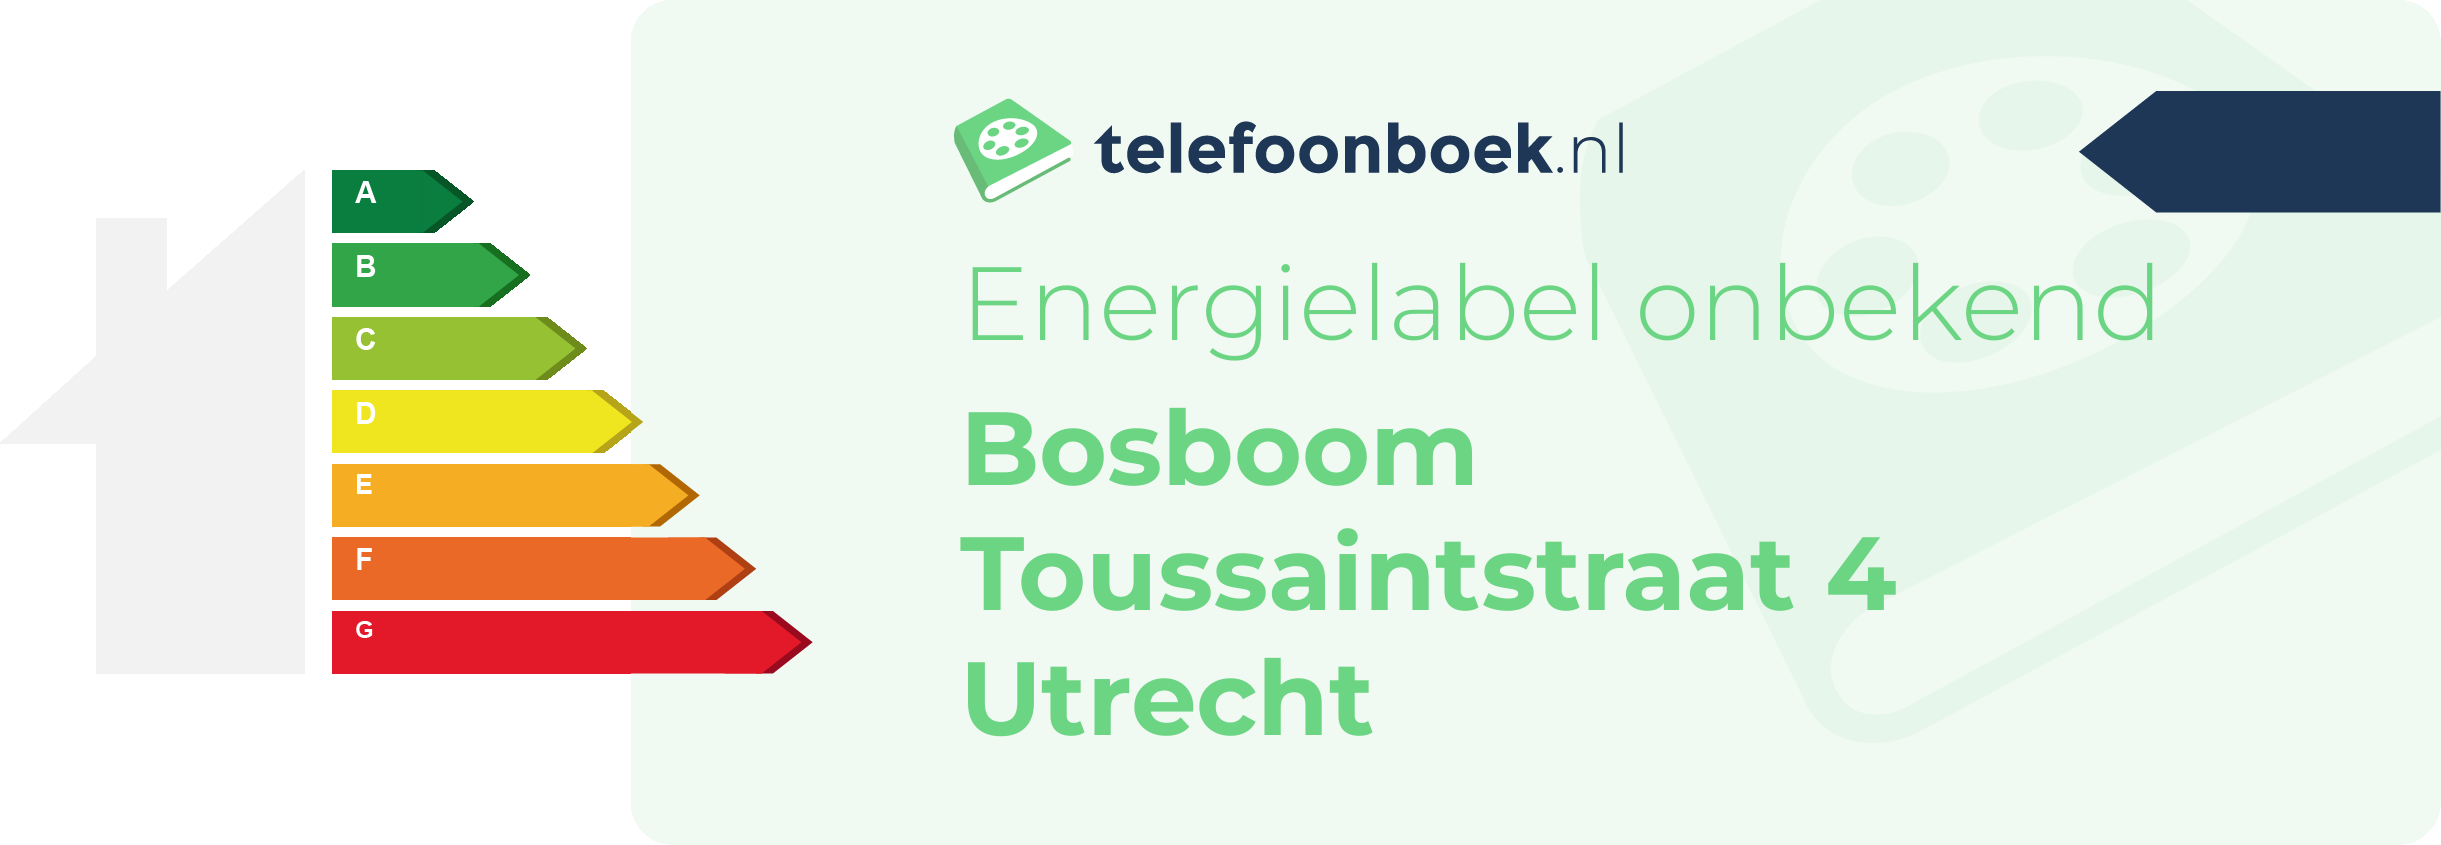 Energielabel Bosboom Toussaintstraat 4 Utrecht